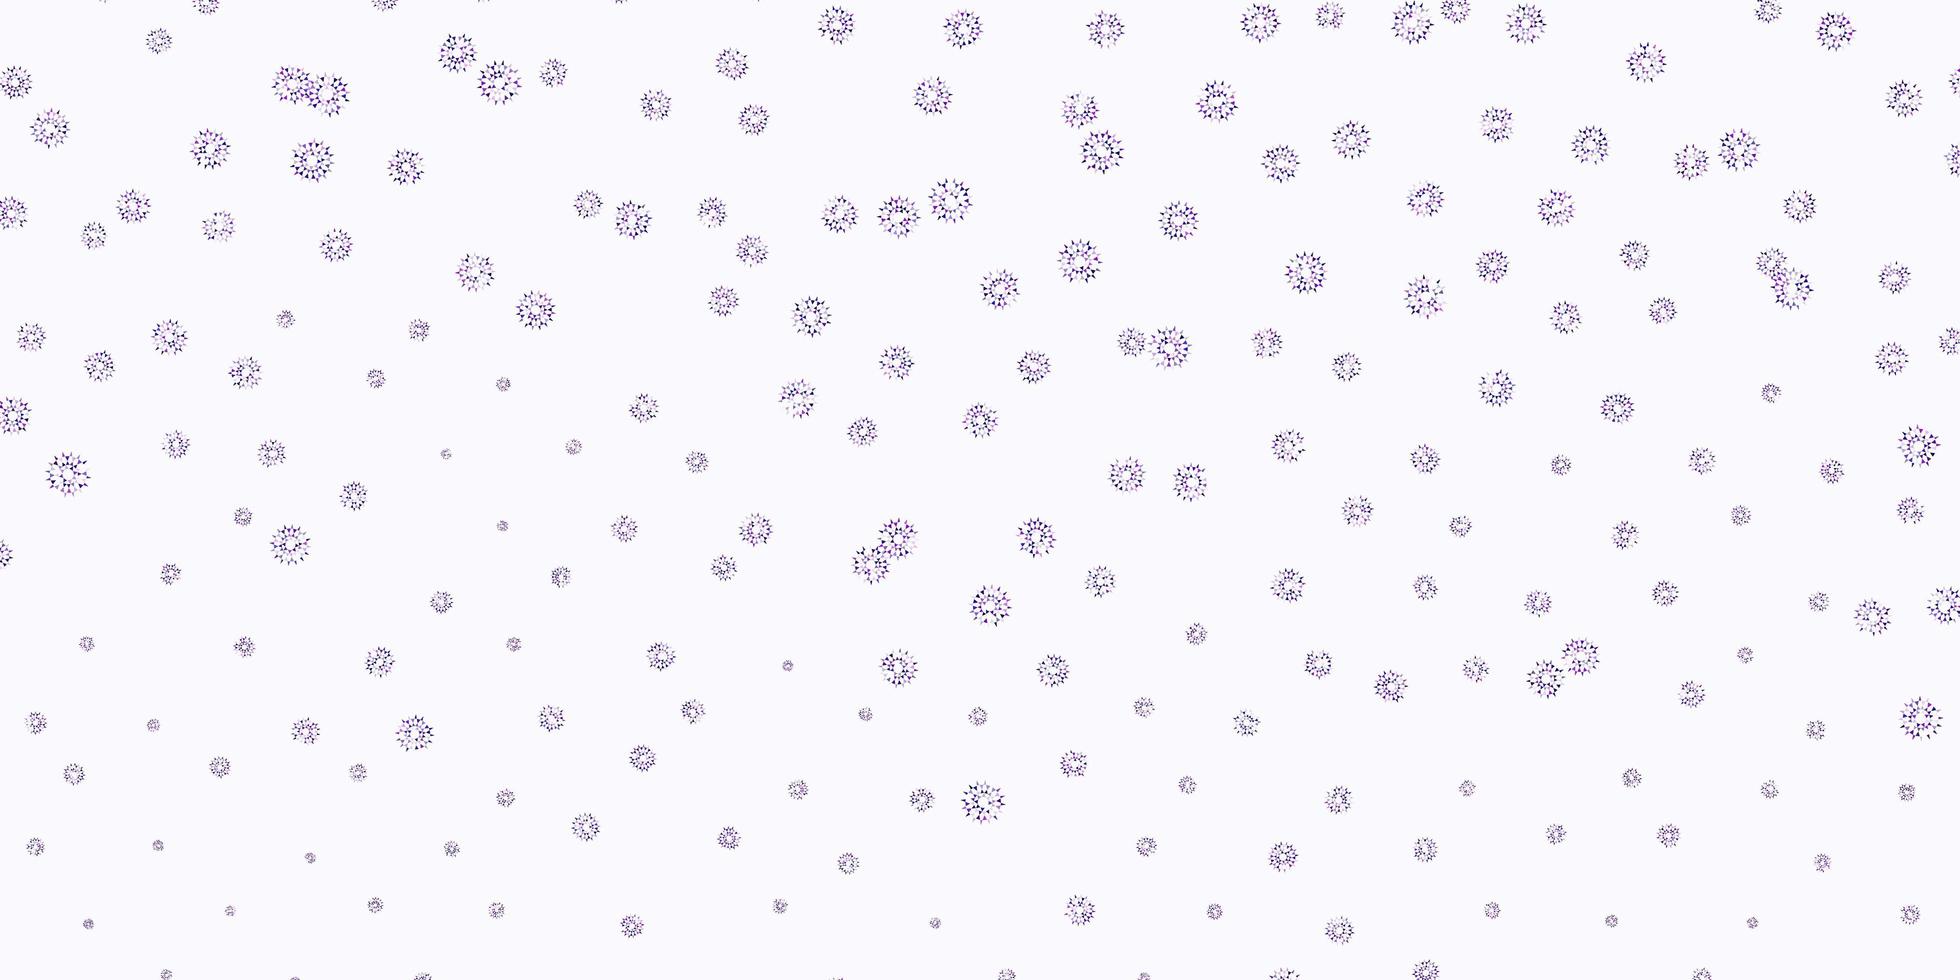 sfondo doodle vettoriale viola chiaro, rosa con fiori.